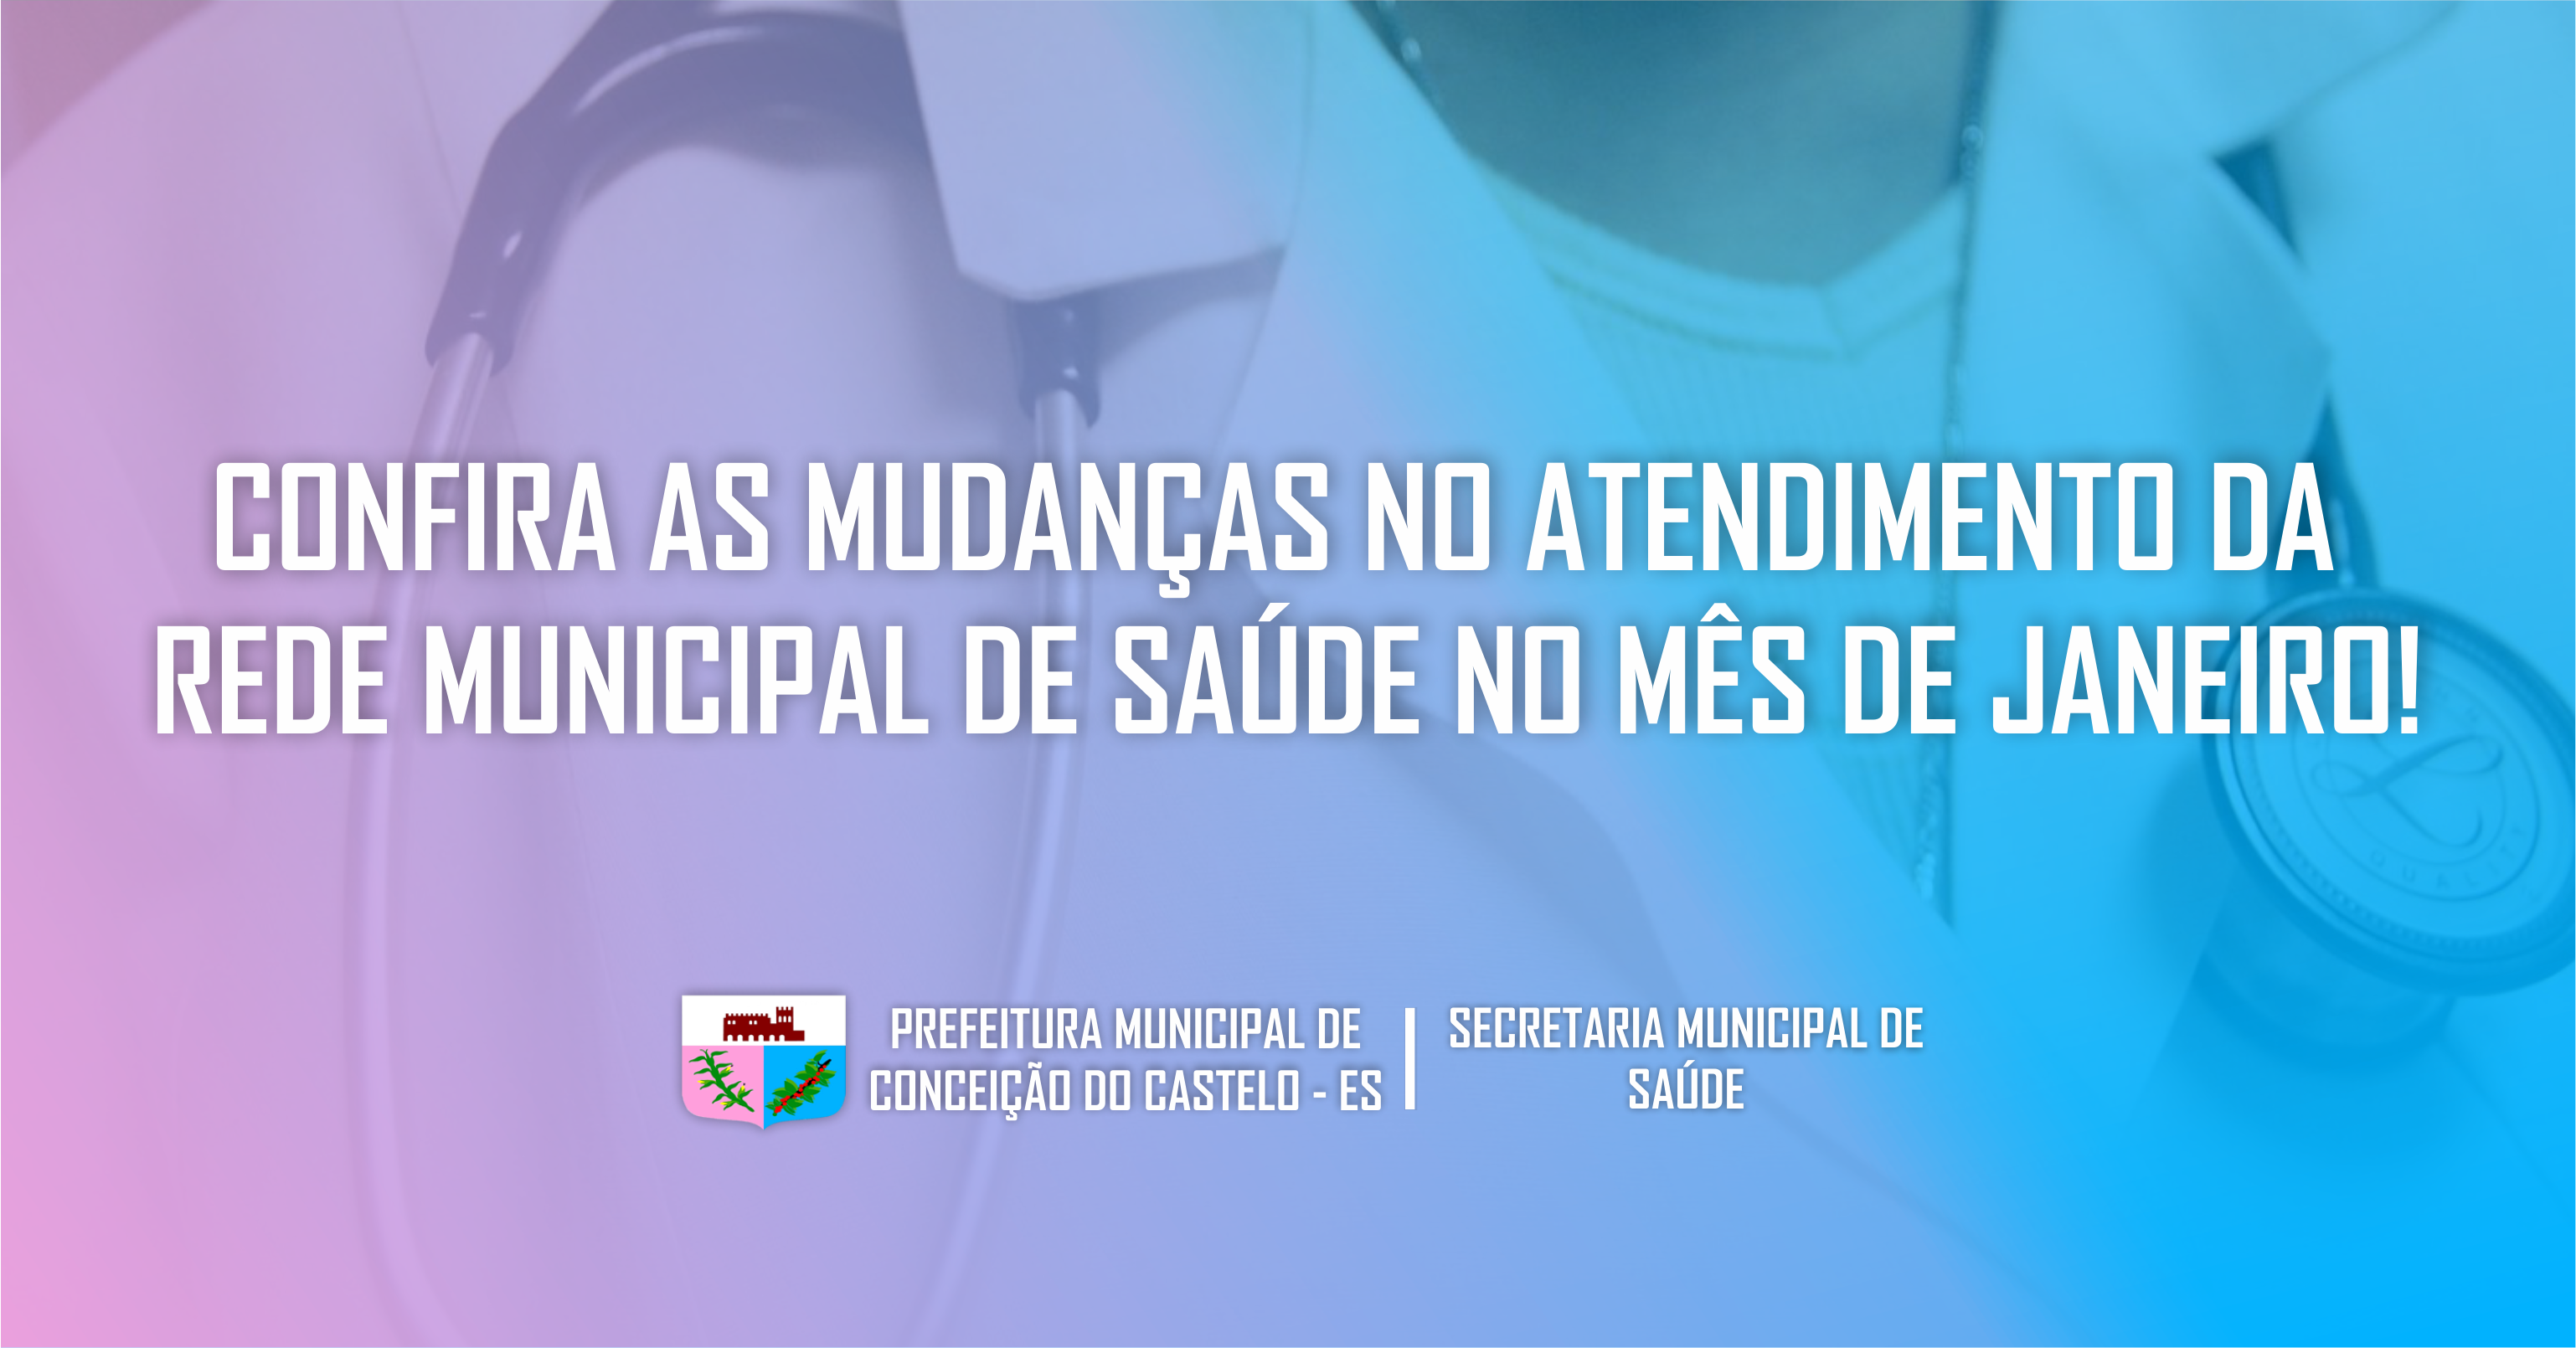 NOTA INFORMATIVA: Atente-se as mudanças no atendimento da rede municipal de saúde no mês de Janeiro.